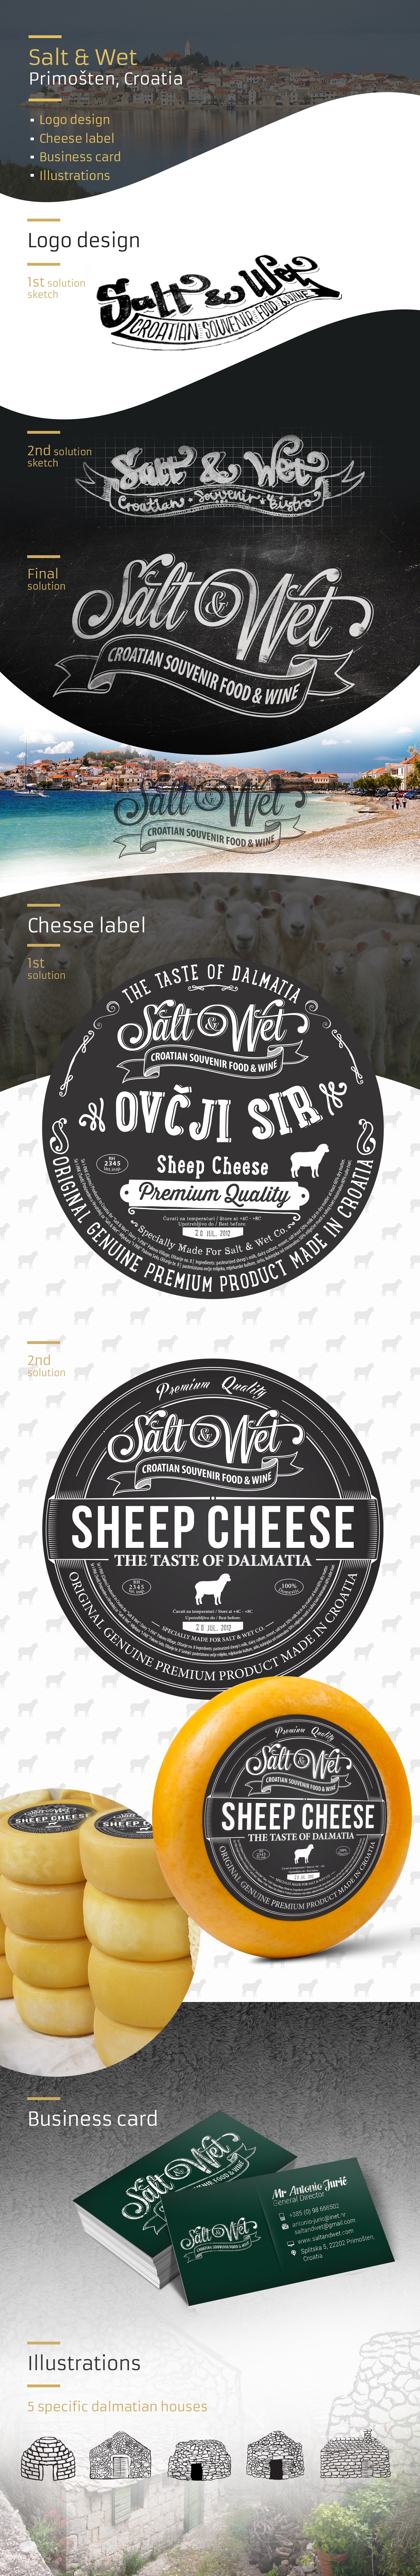 Saltandwet etiketten für käse und logo